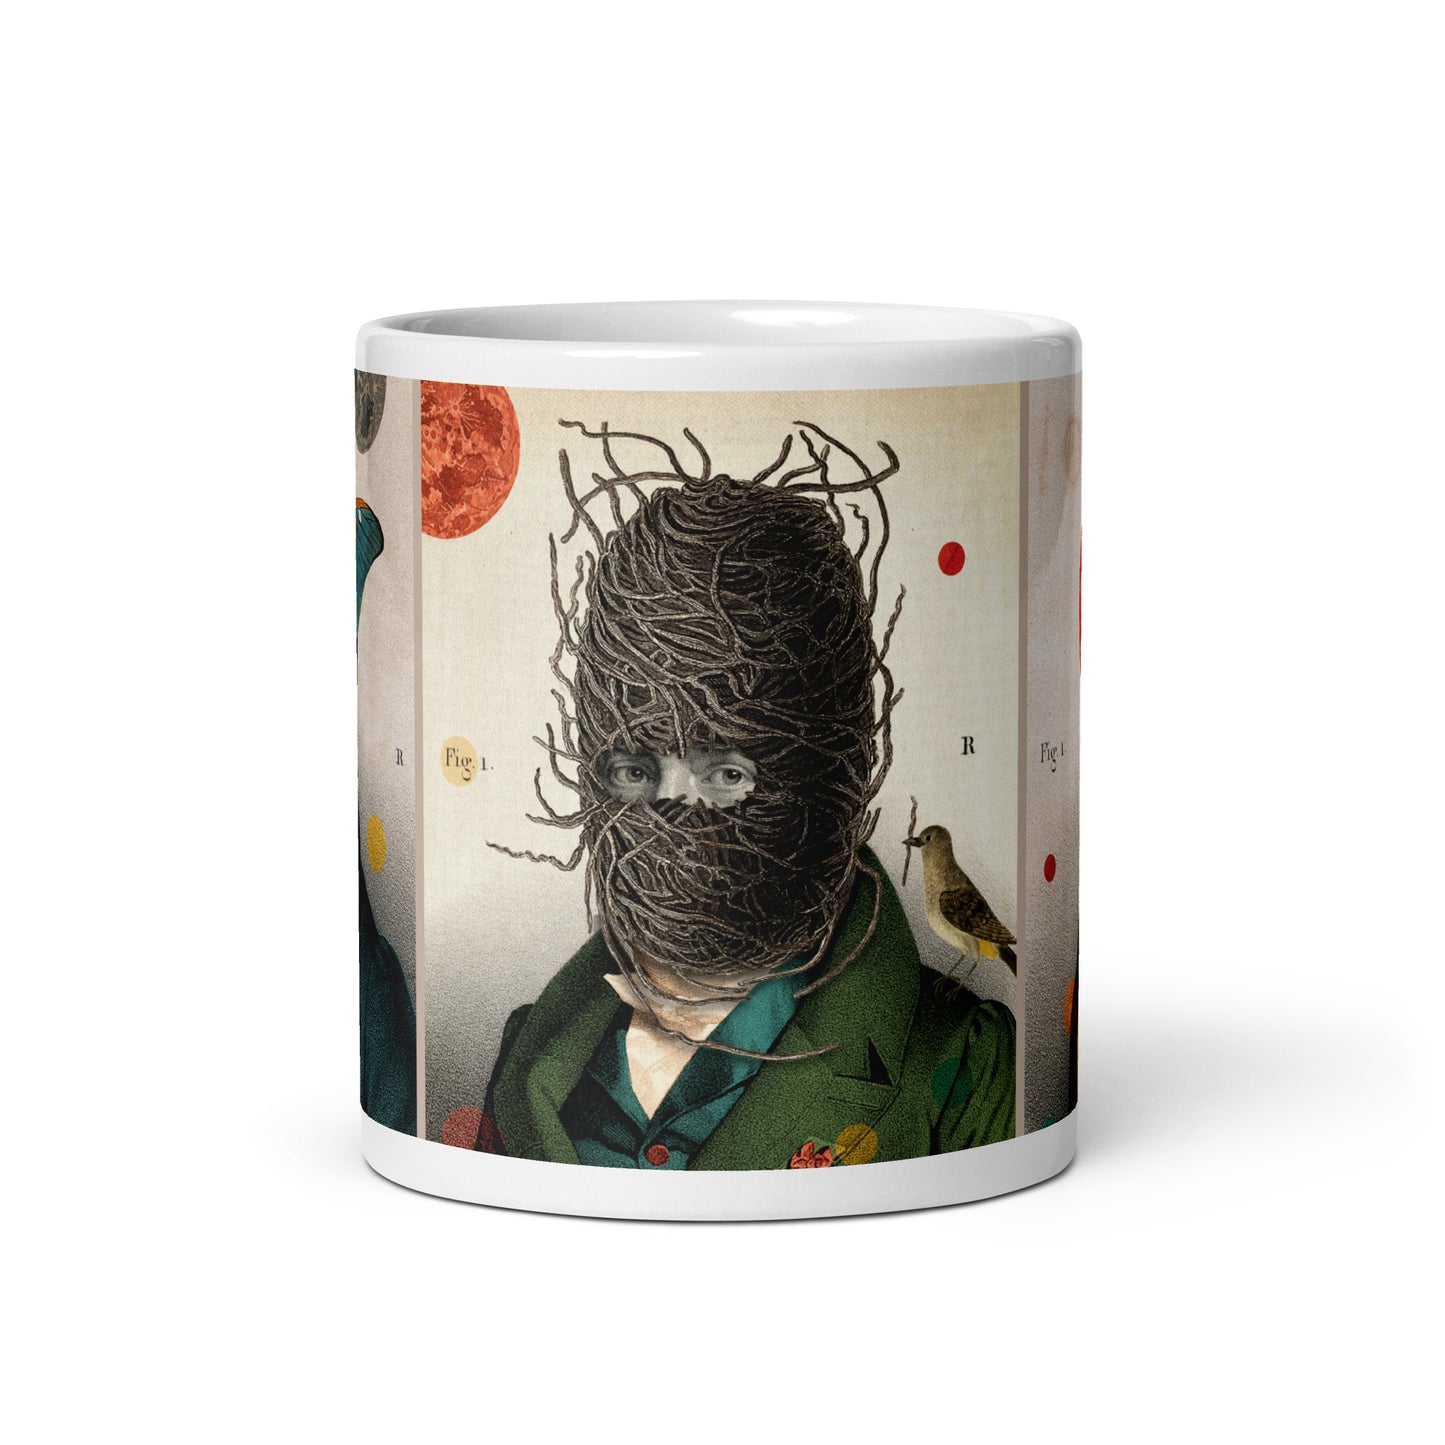 Medieval superheroes mug